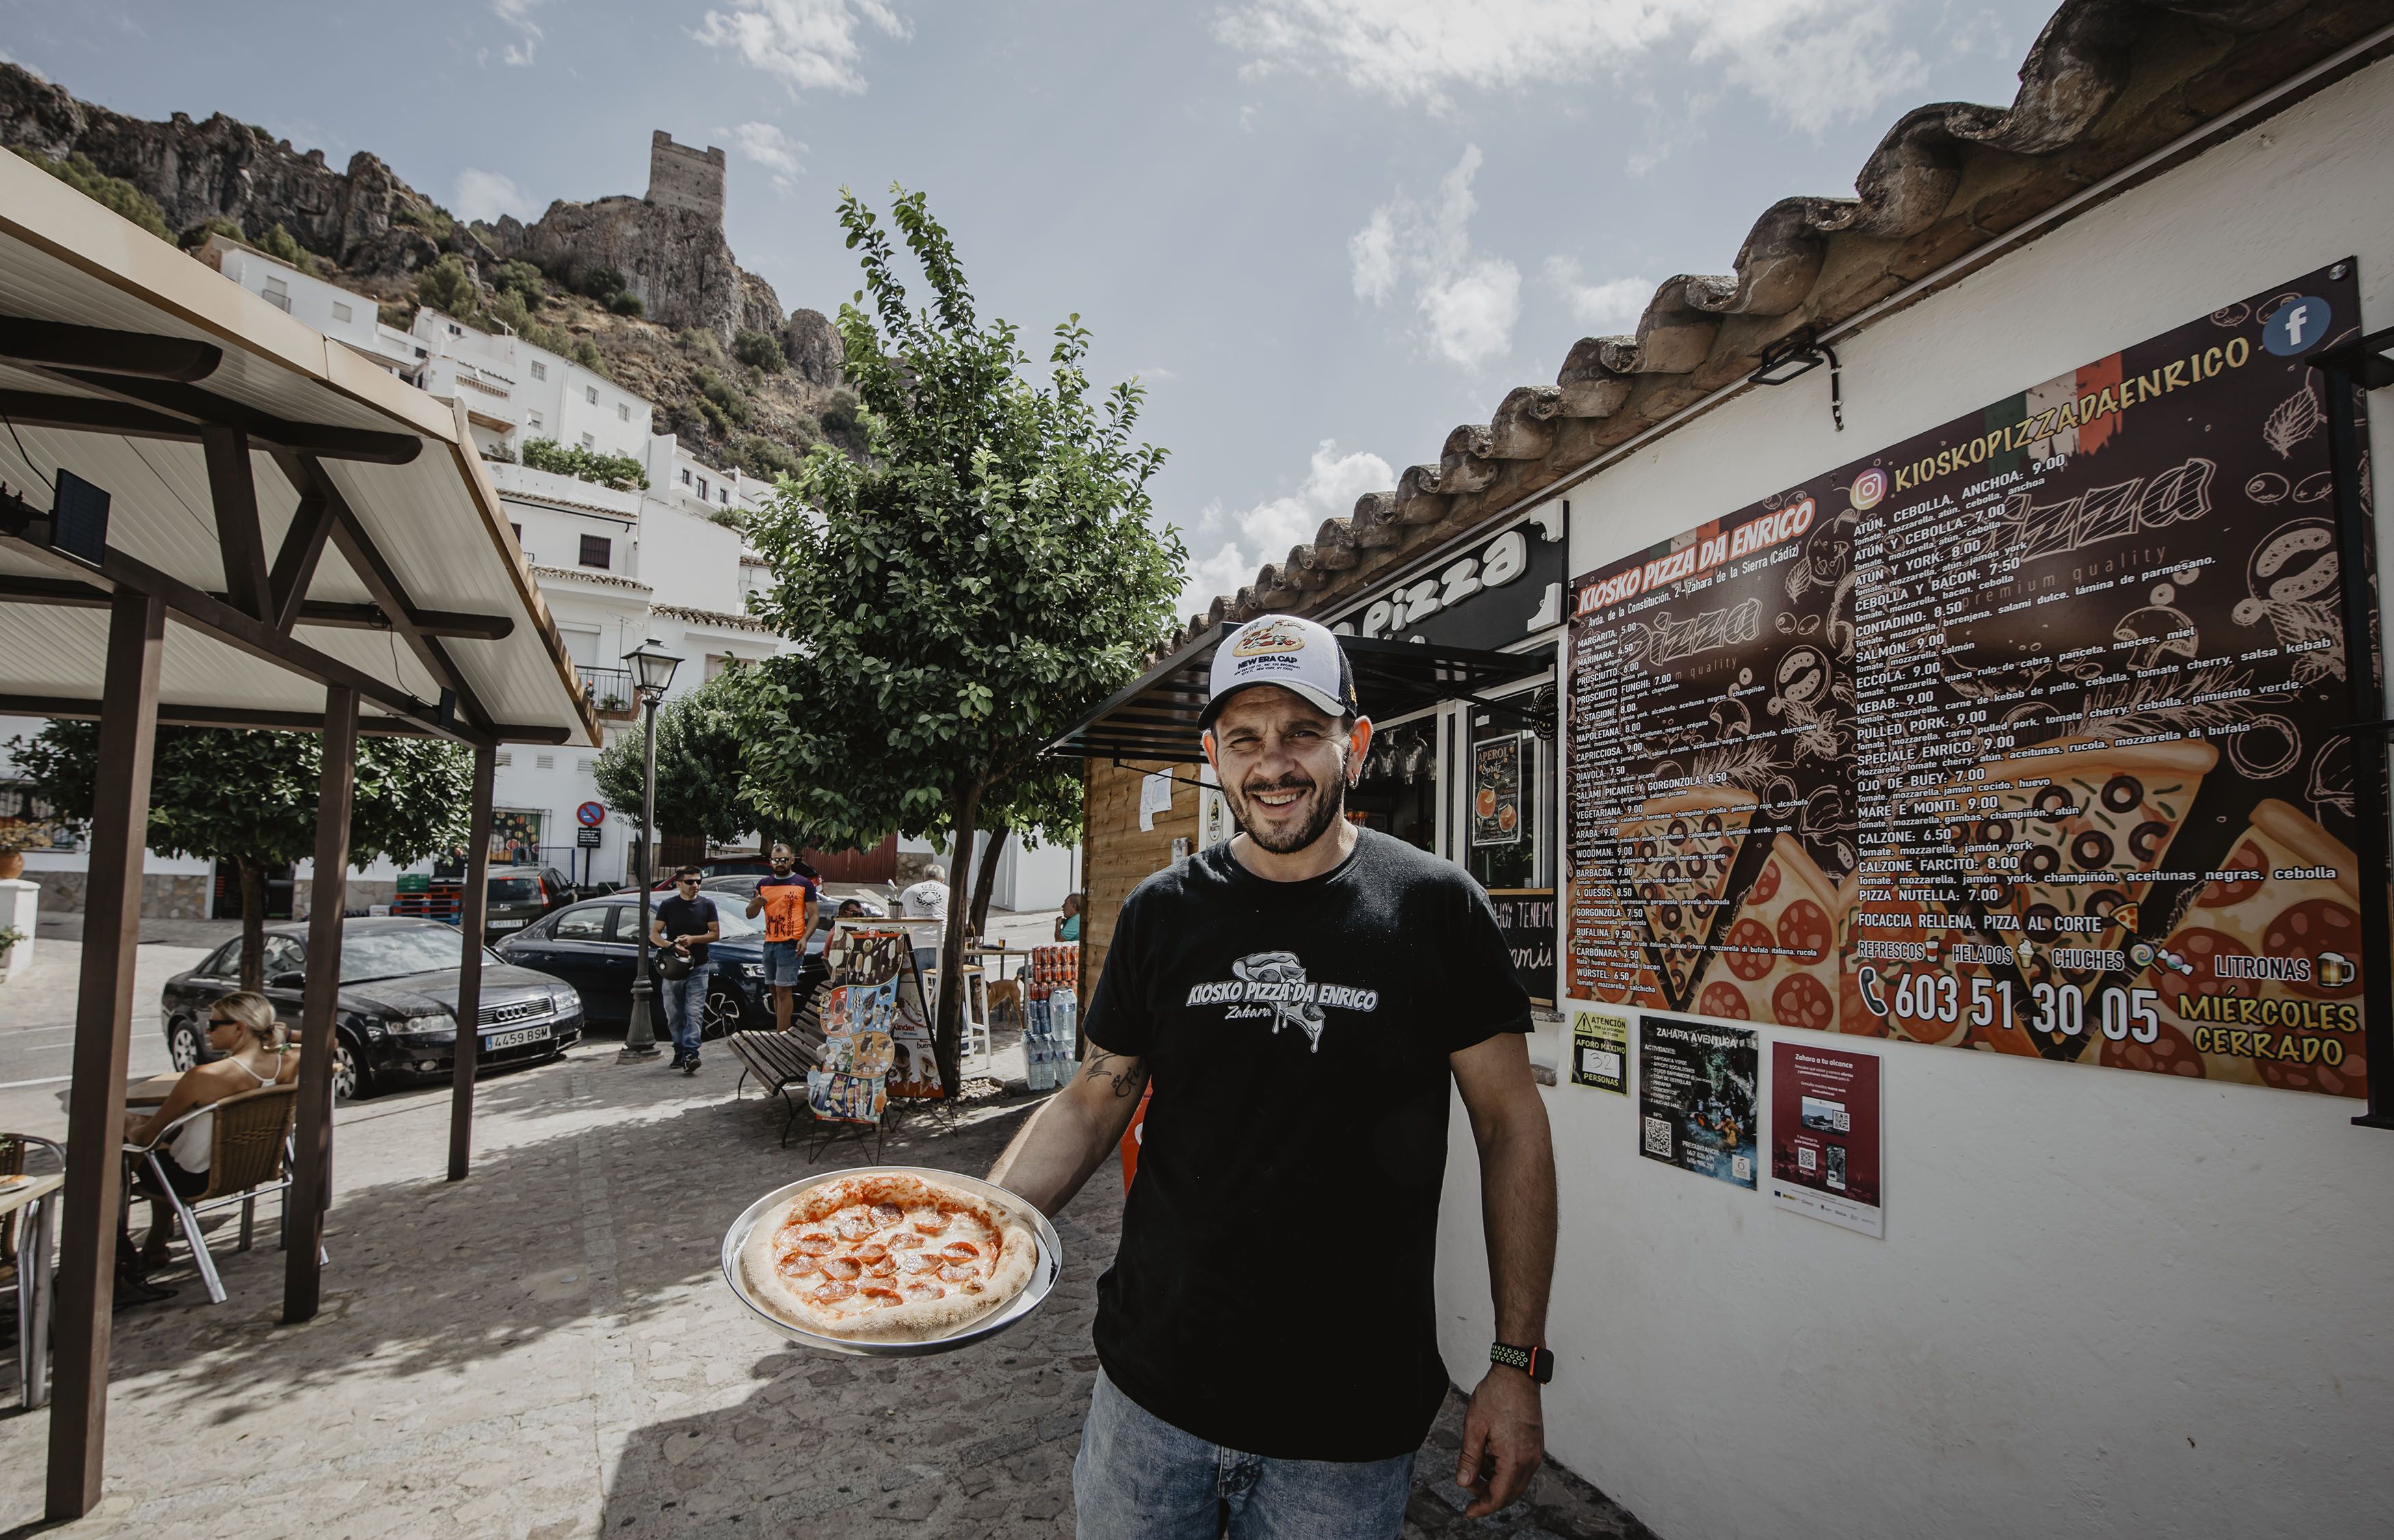 Enrico Granieri muestra una de sus pizzas artesanas, con su quiosco al fondo y el castillo de Zahara de la Sierra, donde ha echado raíces junto a su familia, en lo más alto.